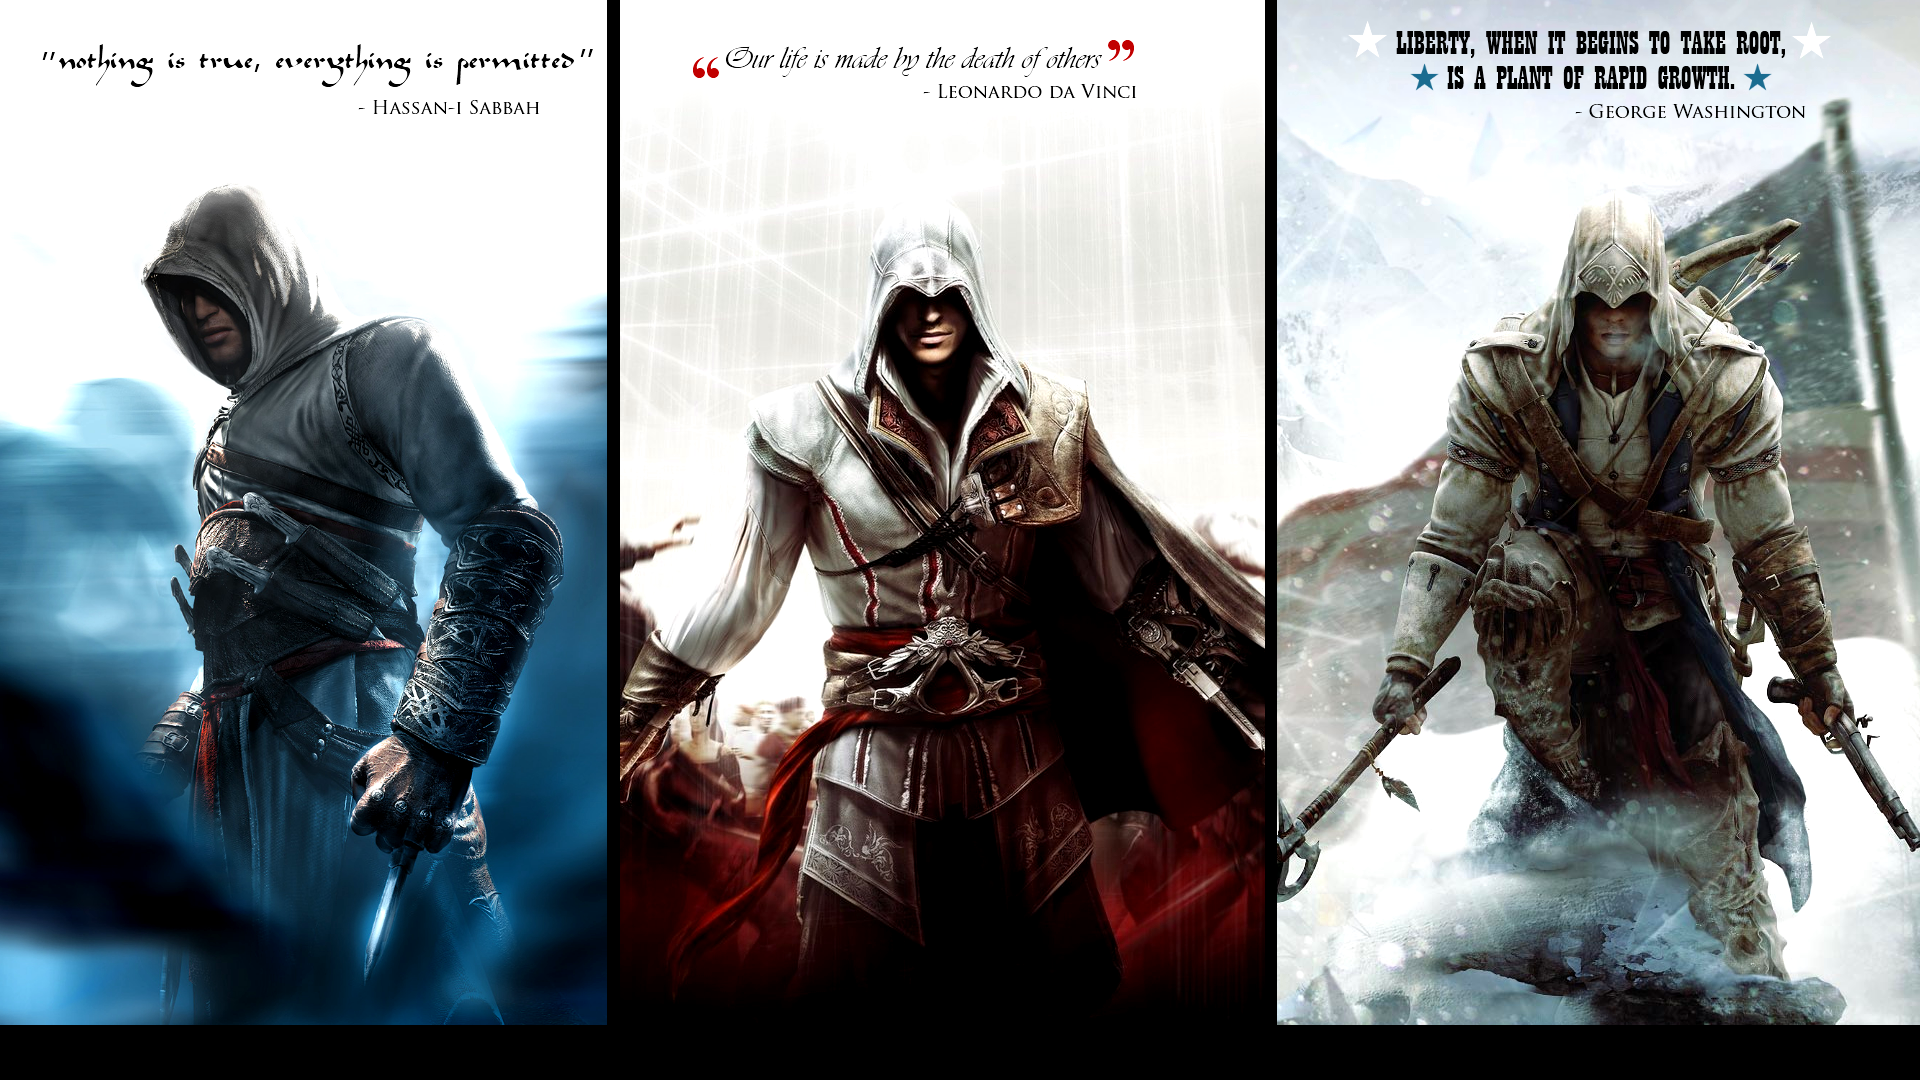 Assassins Creed Ezio Auditore Da Firenze Video Games Assassins Creed 2 Assassins Creed Iii Altair Ib 1920x1080